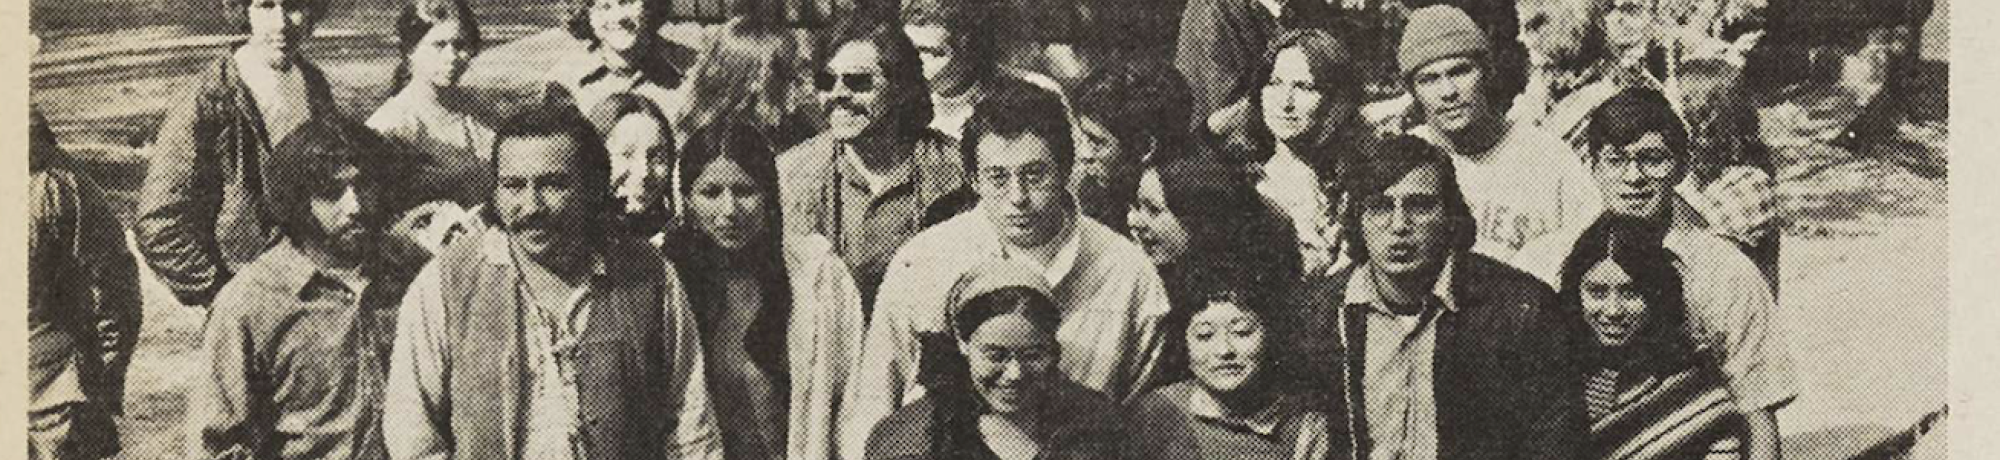 MECHA–Voz de los estudiantes, group picture of MECHA students, Third World News, April 30, 1973